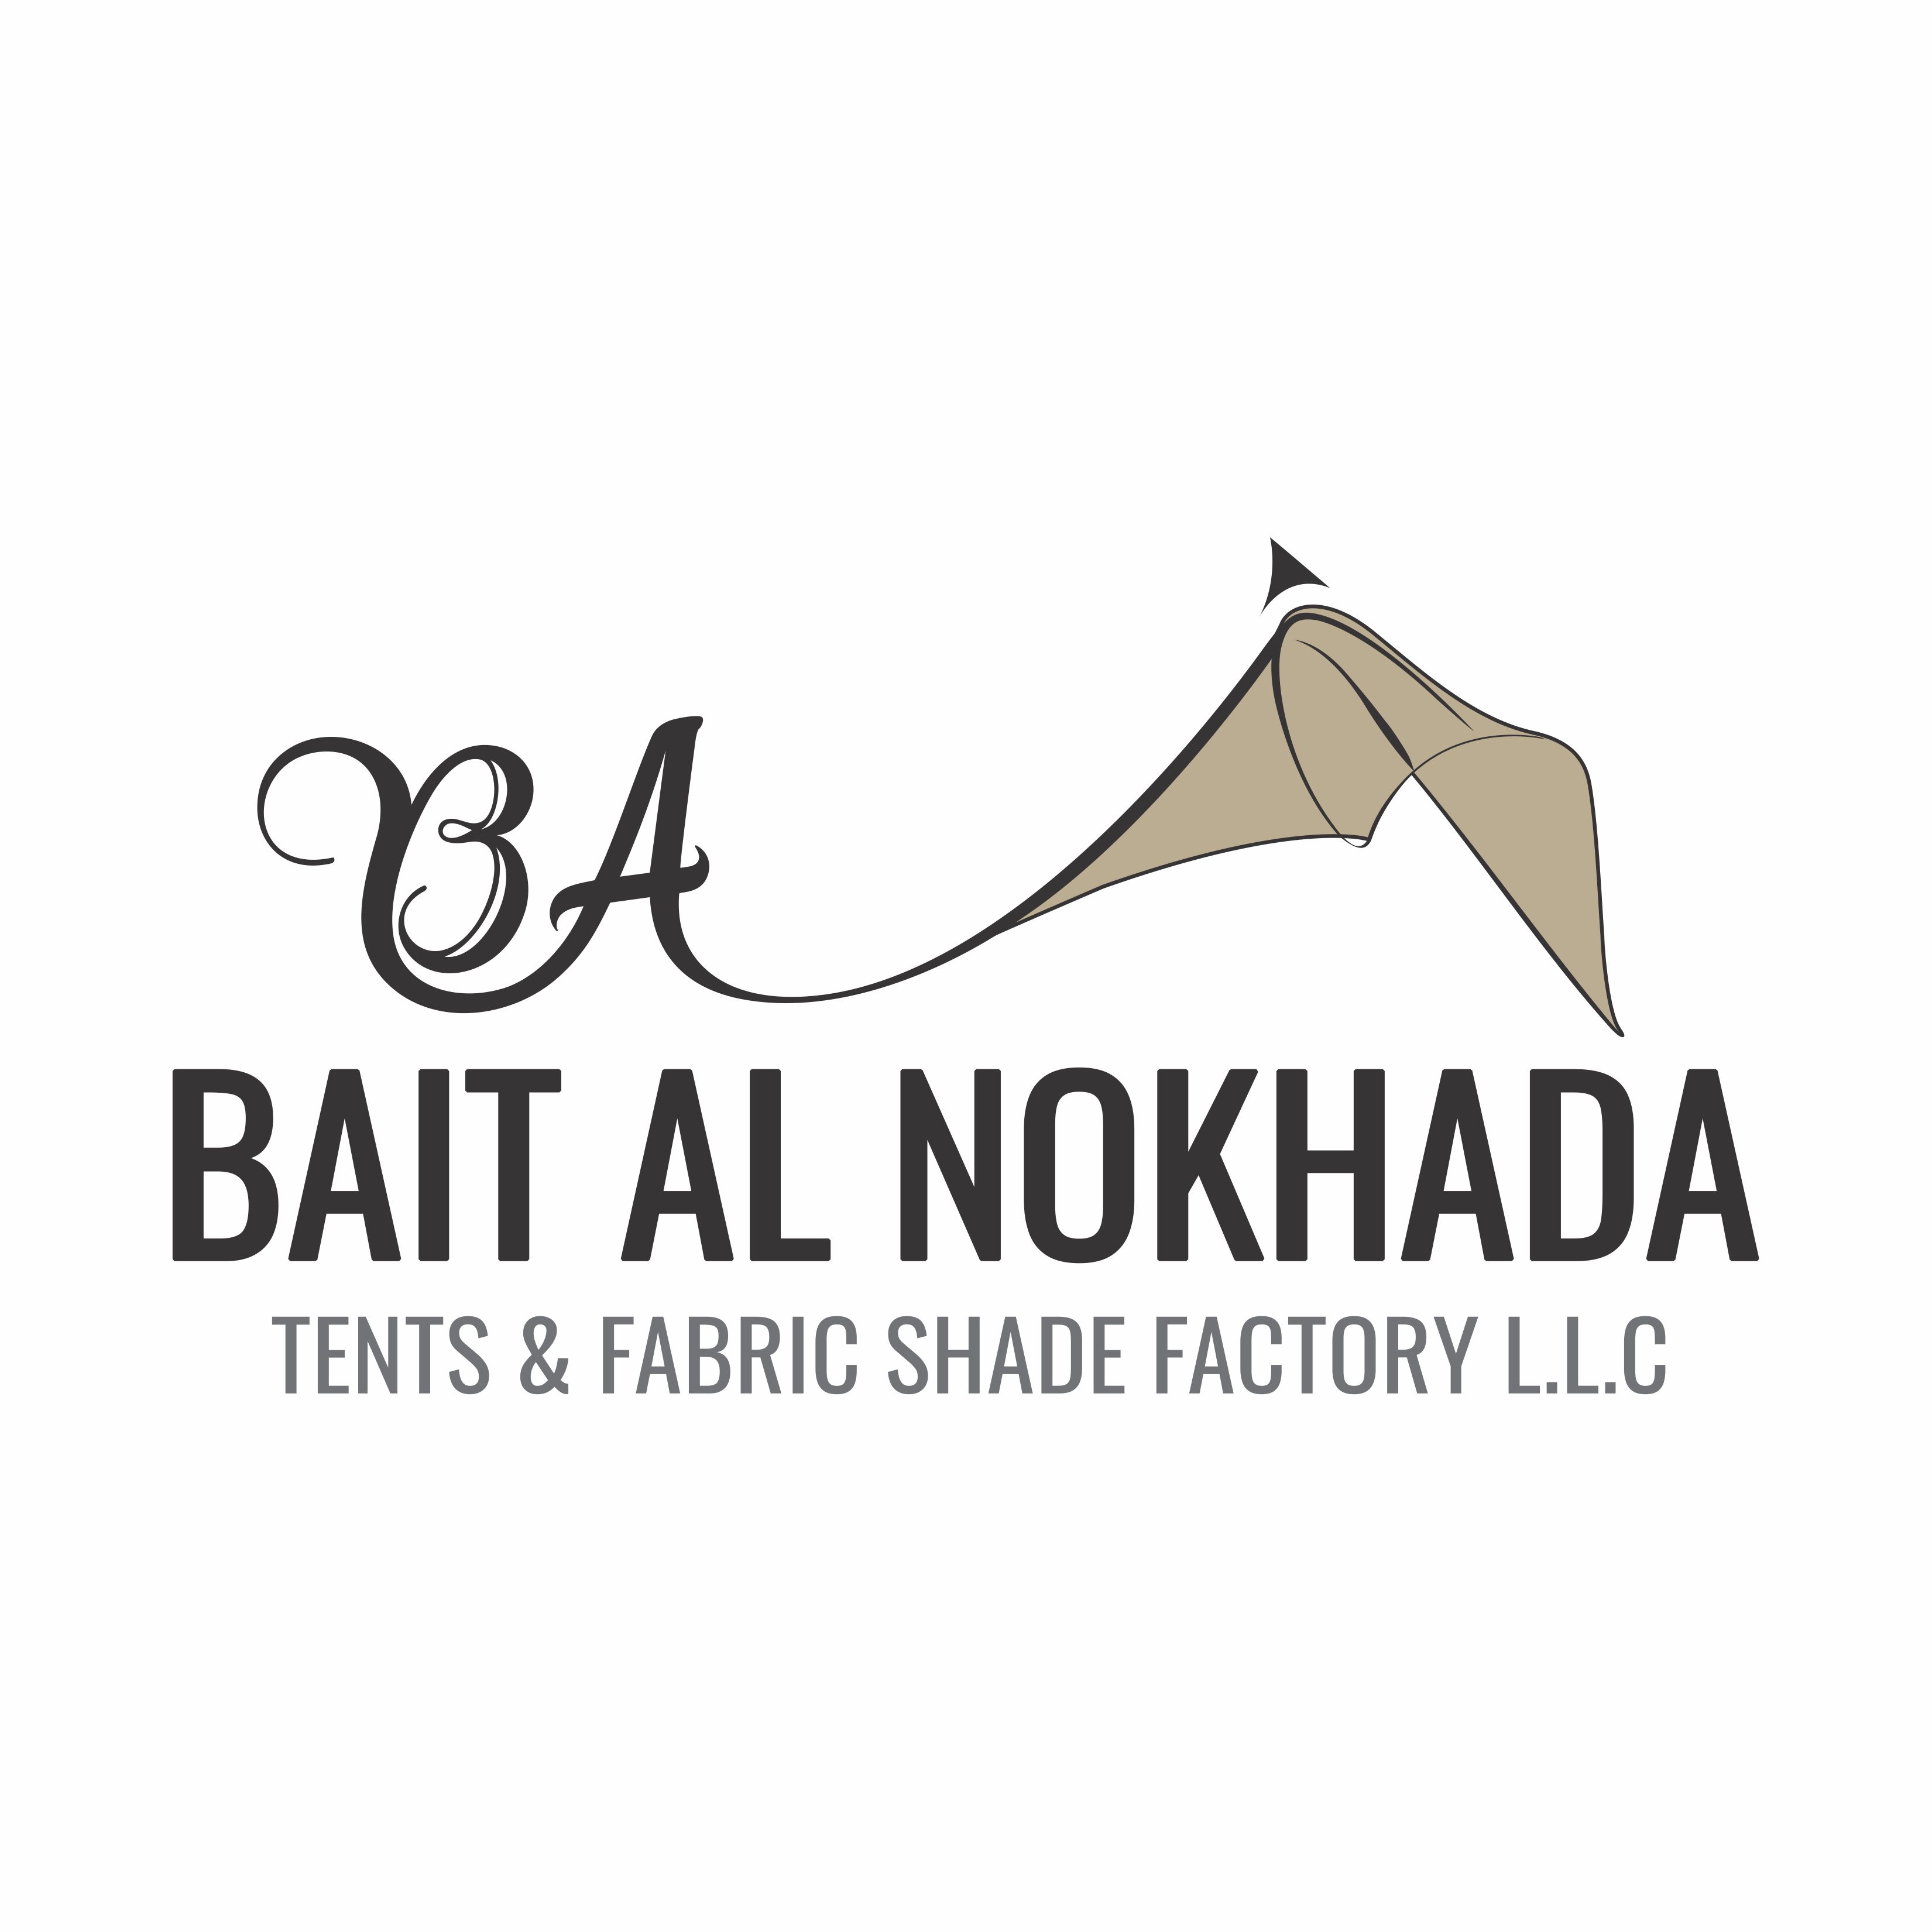 BAIT AL NOKHADA TENTS & FABRIC SHADE FACTORY L.L.C